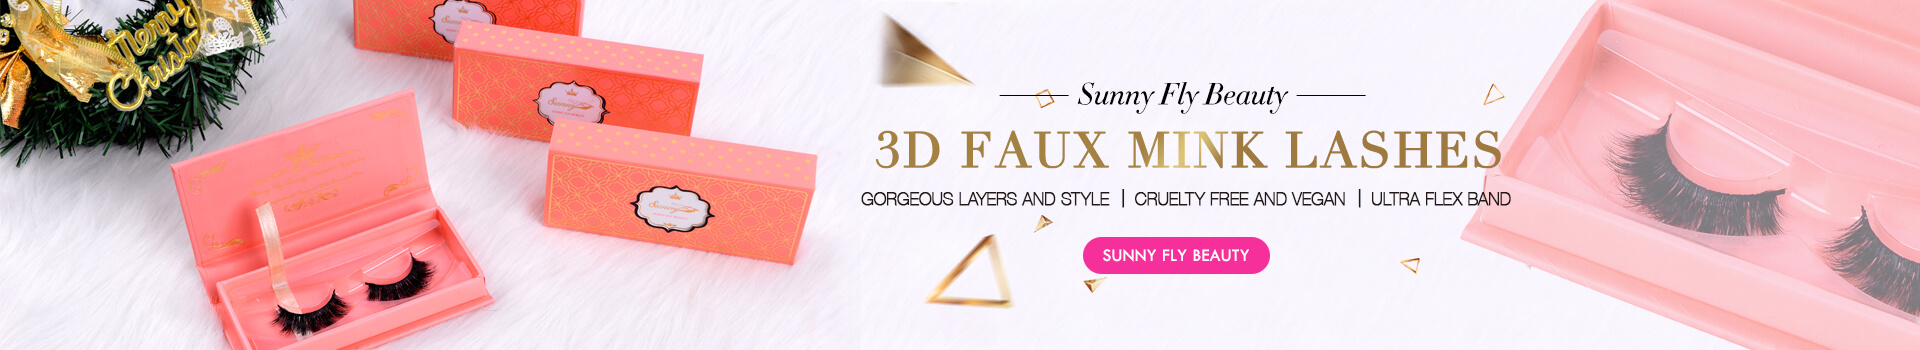 3D Faux Mink Lashes SD56